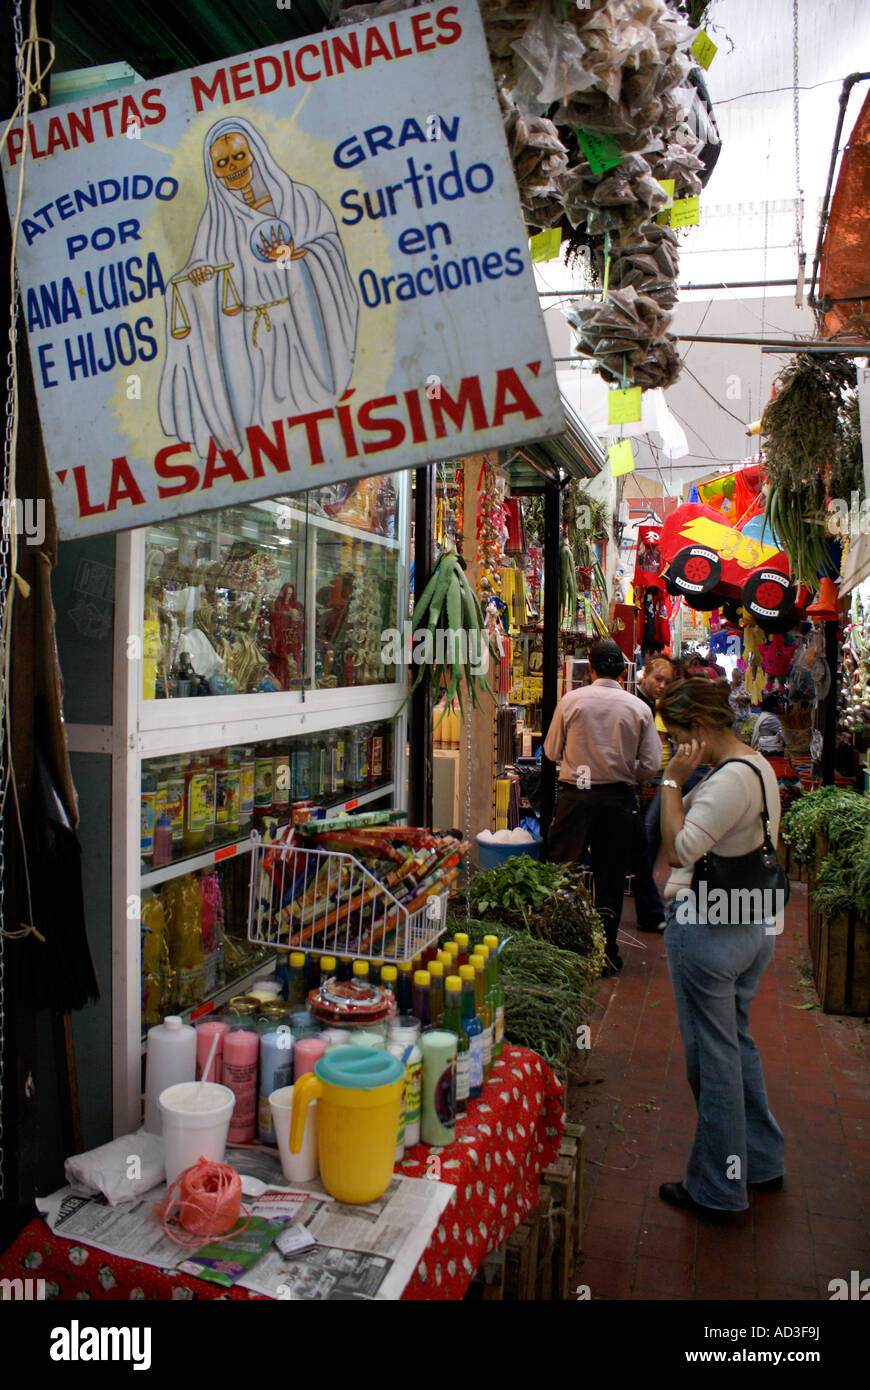 Compras para la mujer en el mercado de plantas medicinales, de la ciudad de Veracruz México Foto de stock